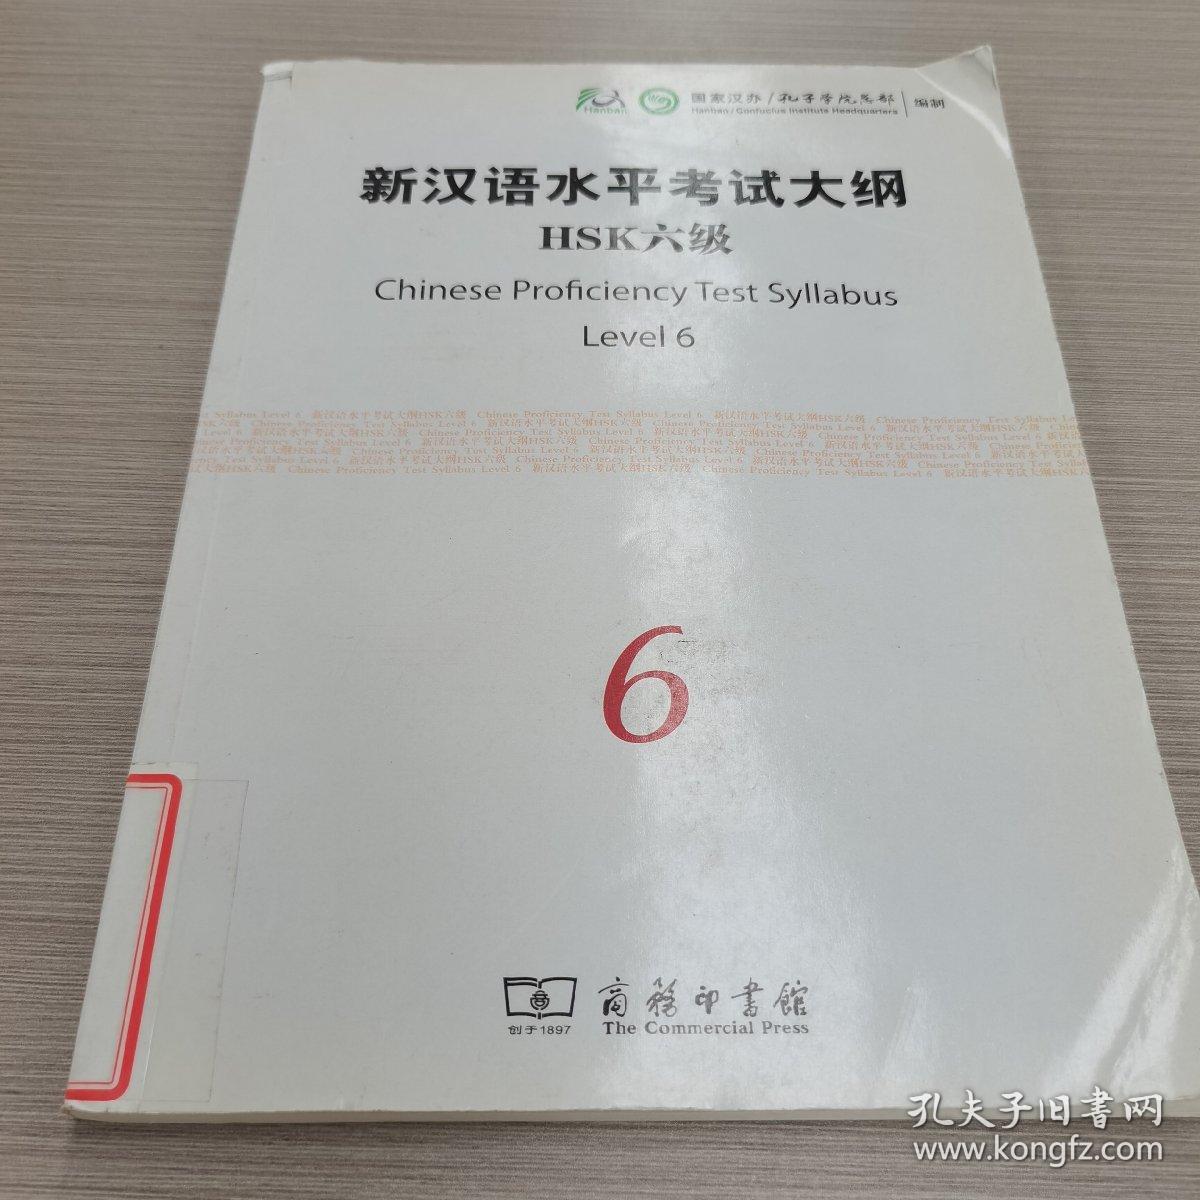 新汉语水平考试大纲HSK6级